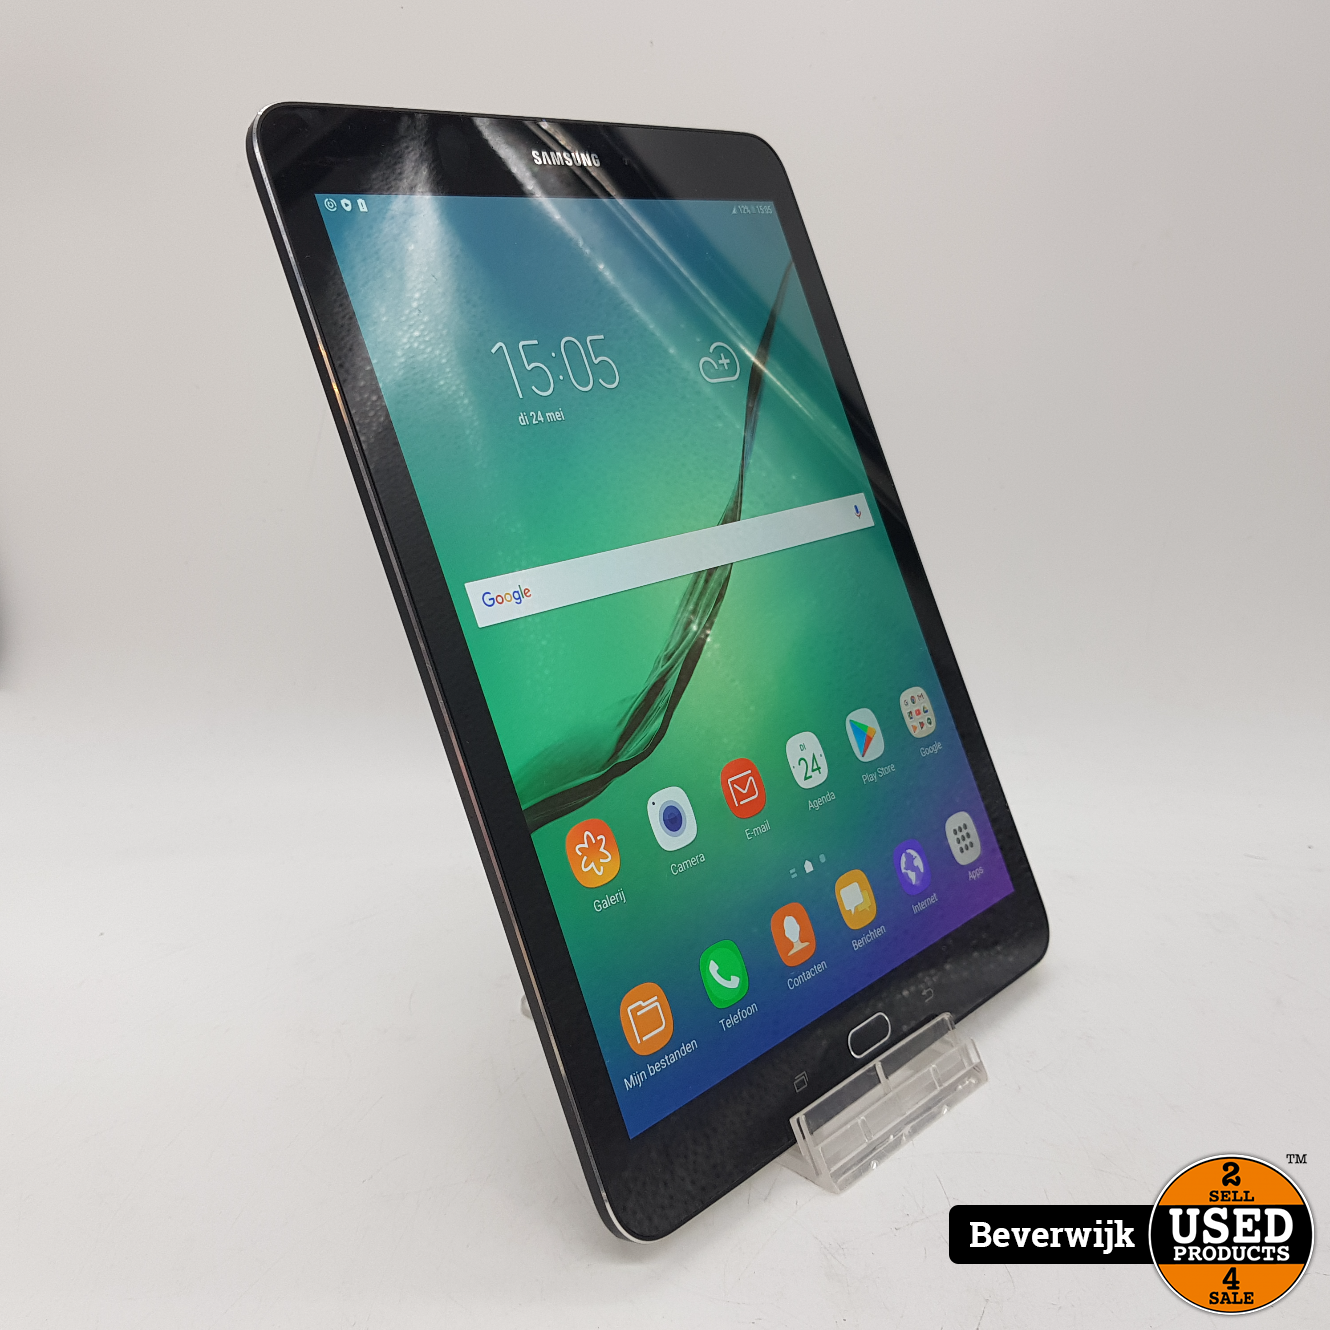 Zuidelijk Sanders Hoelahoep Samsung Galaxy Tab S2 32GB Zwart - In Goede Staat! - Used Products Beverwijk